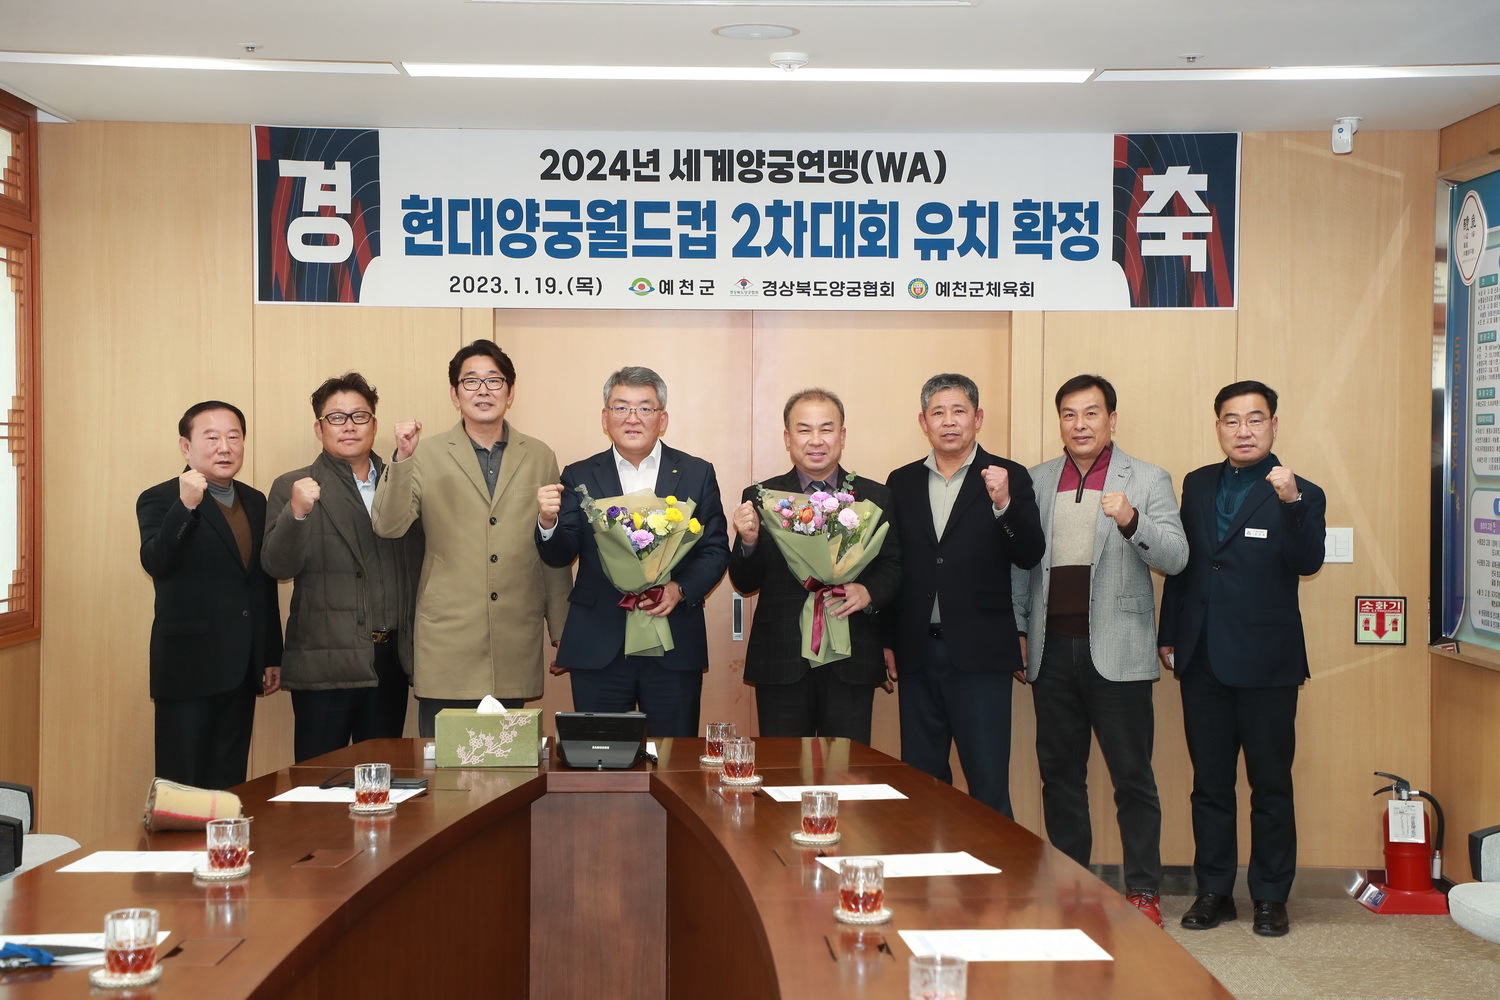 예천 2024 현대양궁월드컵대회 유치확정 기념식 모습.